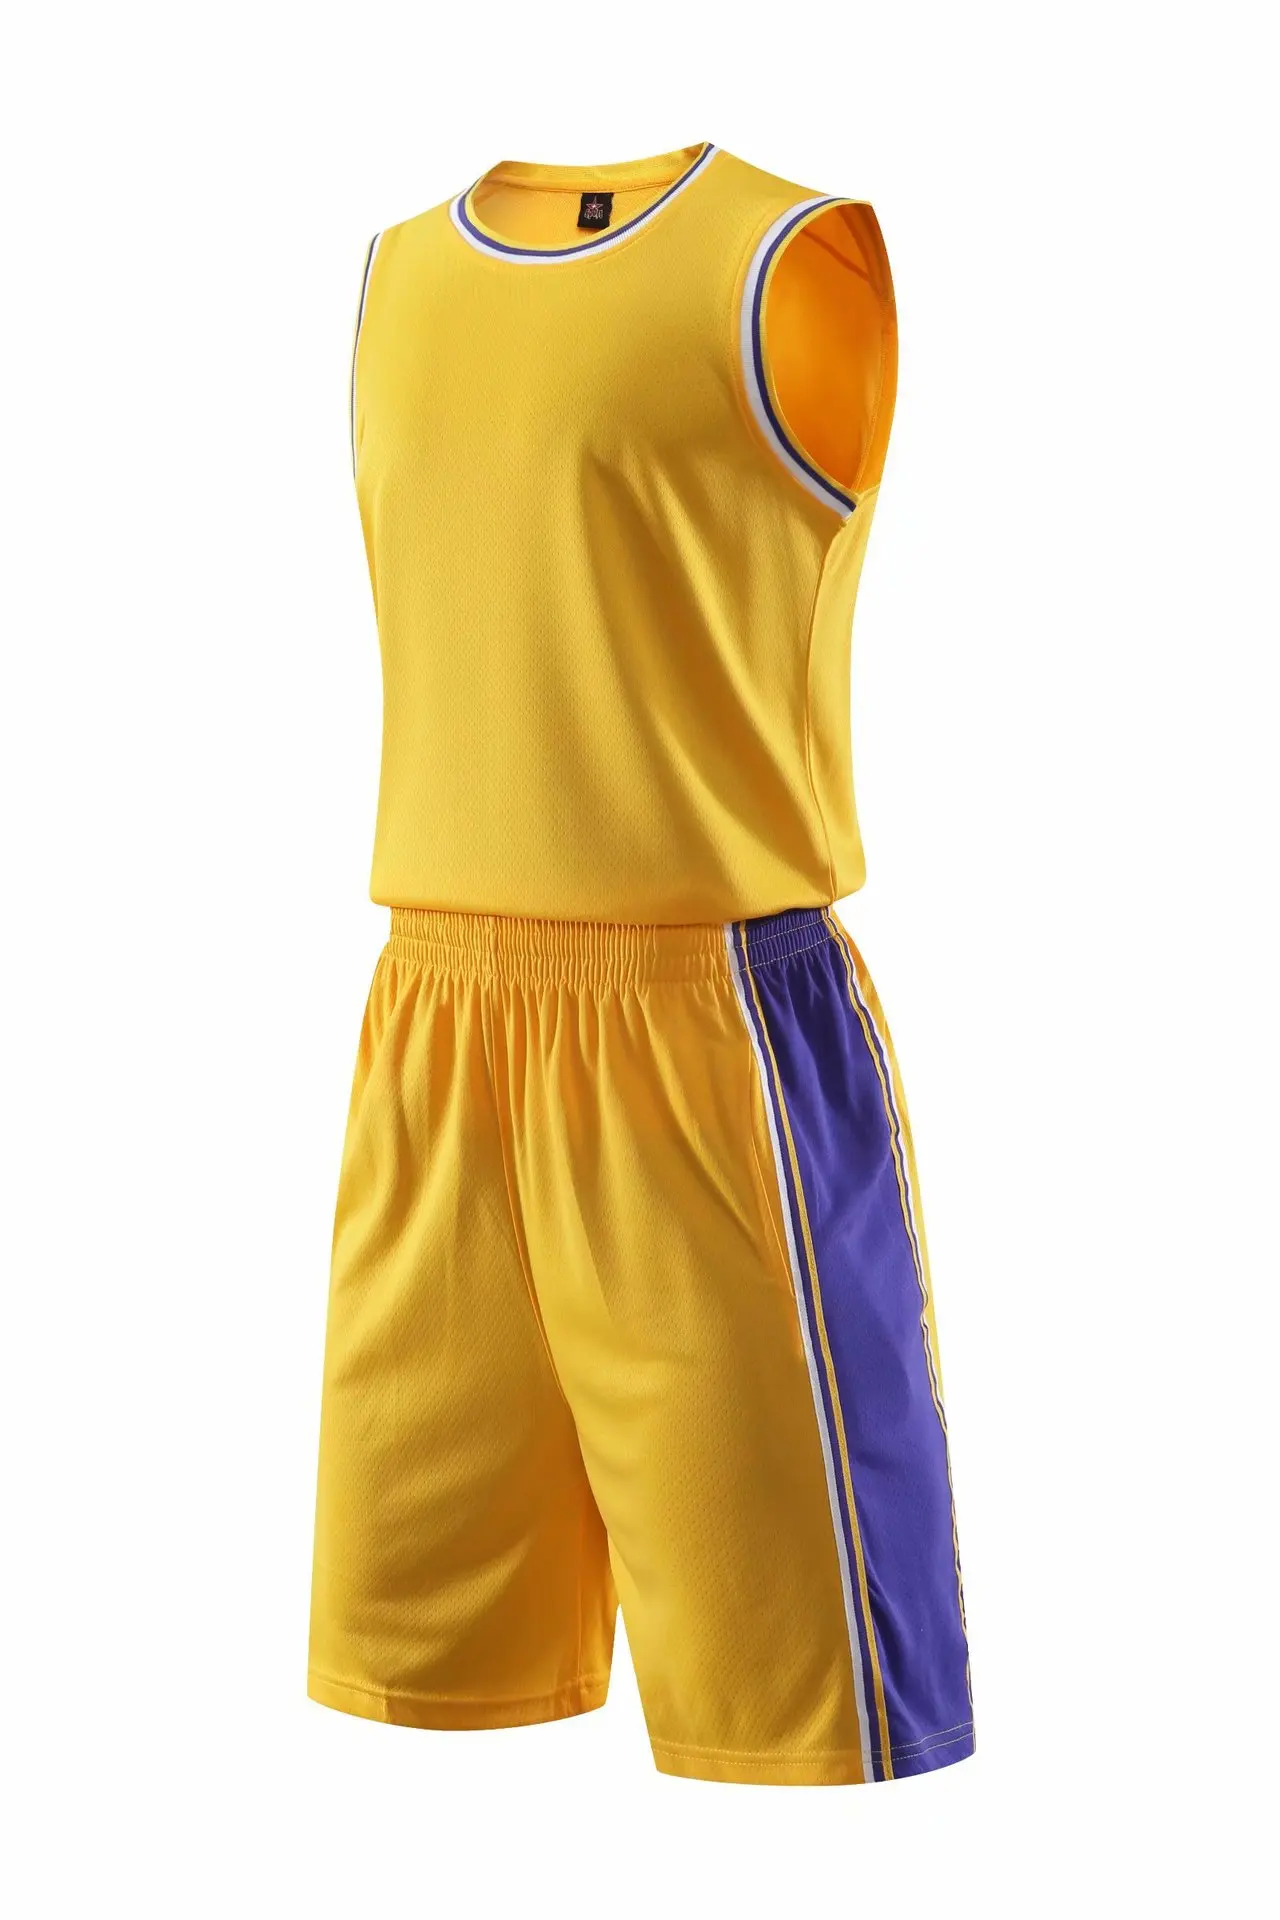 18-19 стиль Лейкерс НБА Баскетбол Одежда Костюм Спортивная одежда Кастомизация индивидуального персонажа игры Джерси T